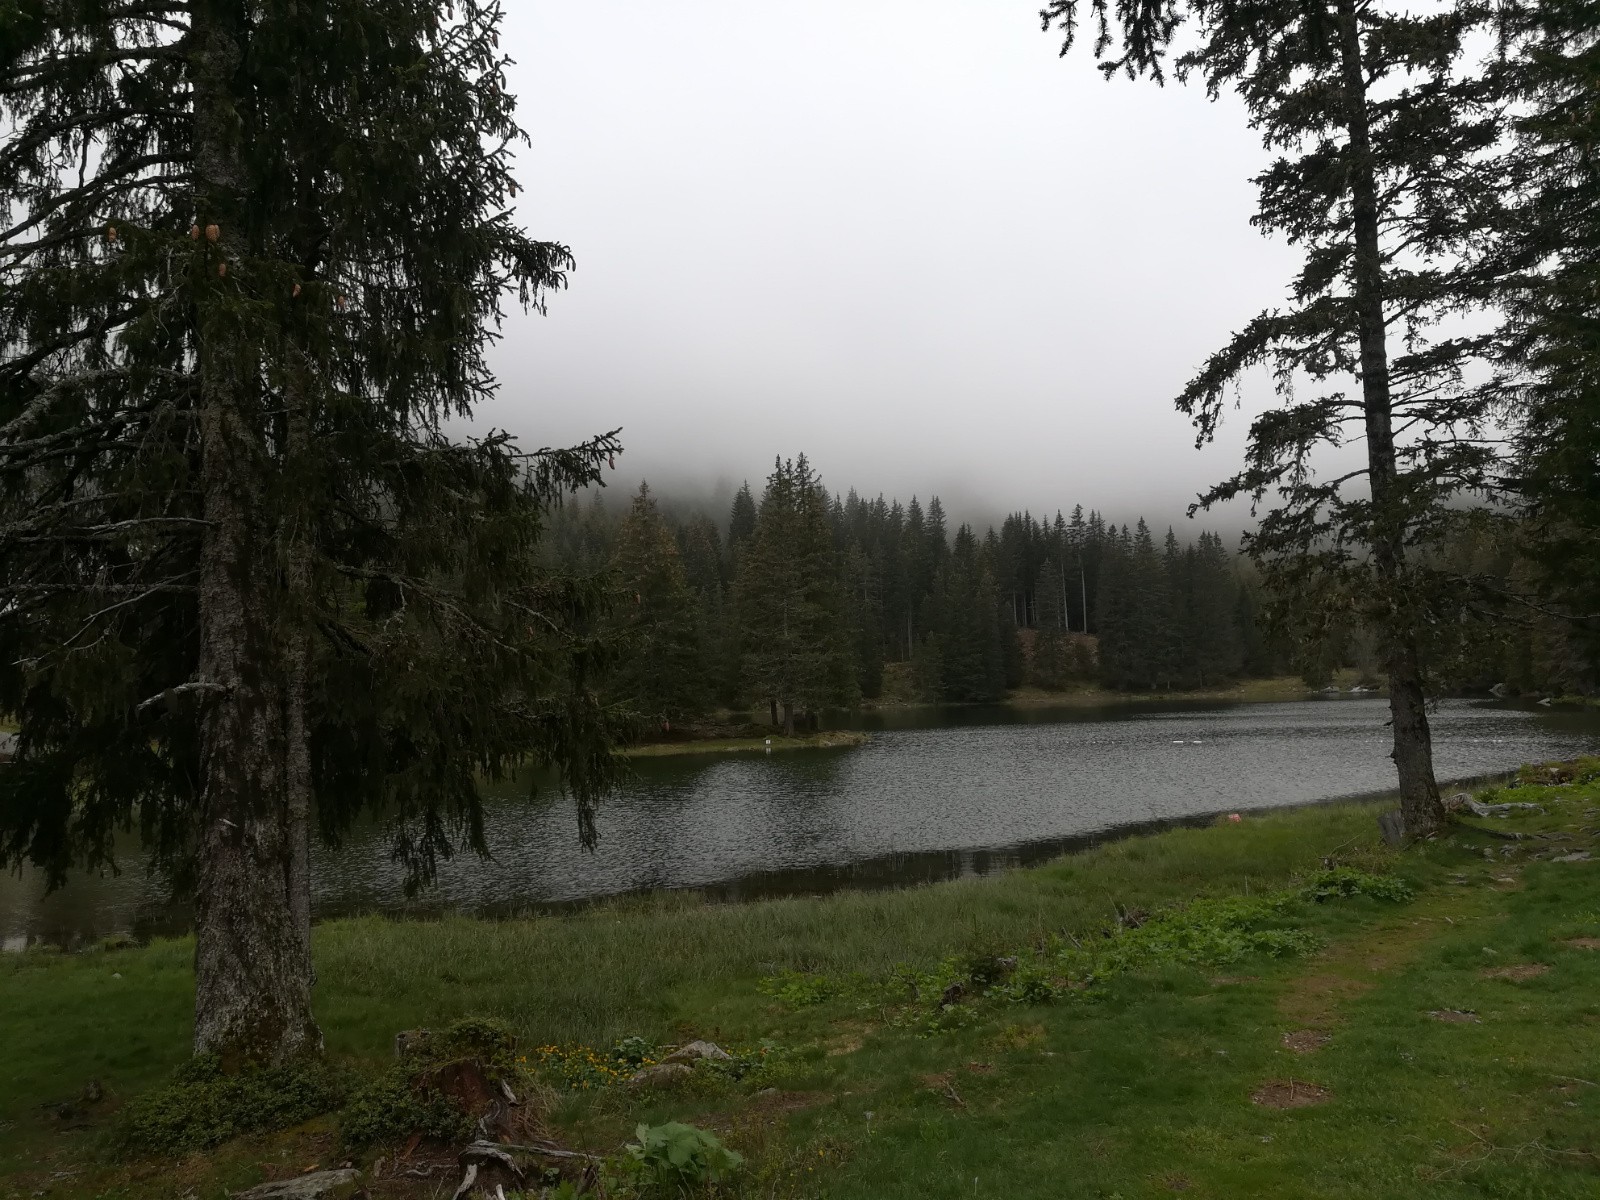 Lac du Poursollet magnifique malgré les nuages bas... Ambiance canadienne